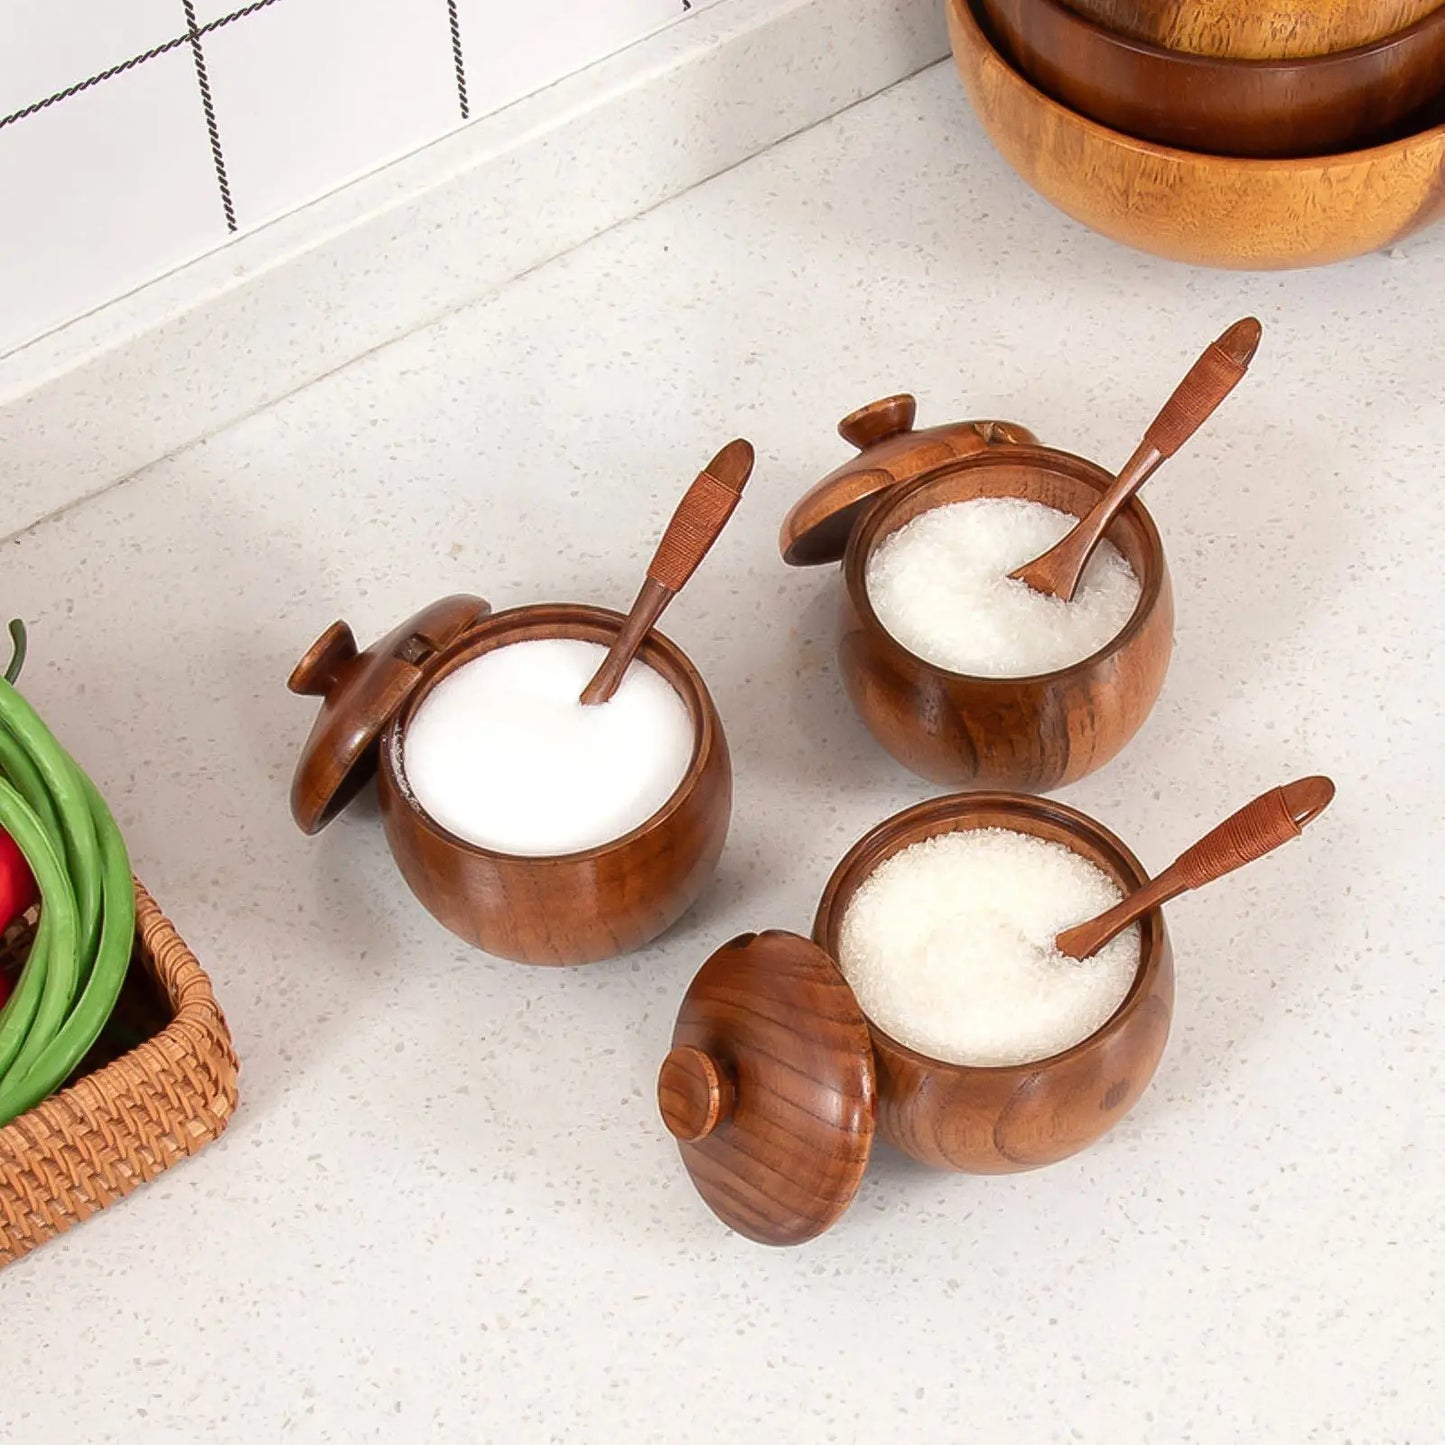 Recipientes de madera para sal o azúcar con tapa, cuchara y opción a bandeja